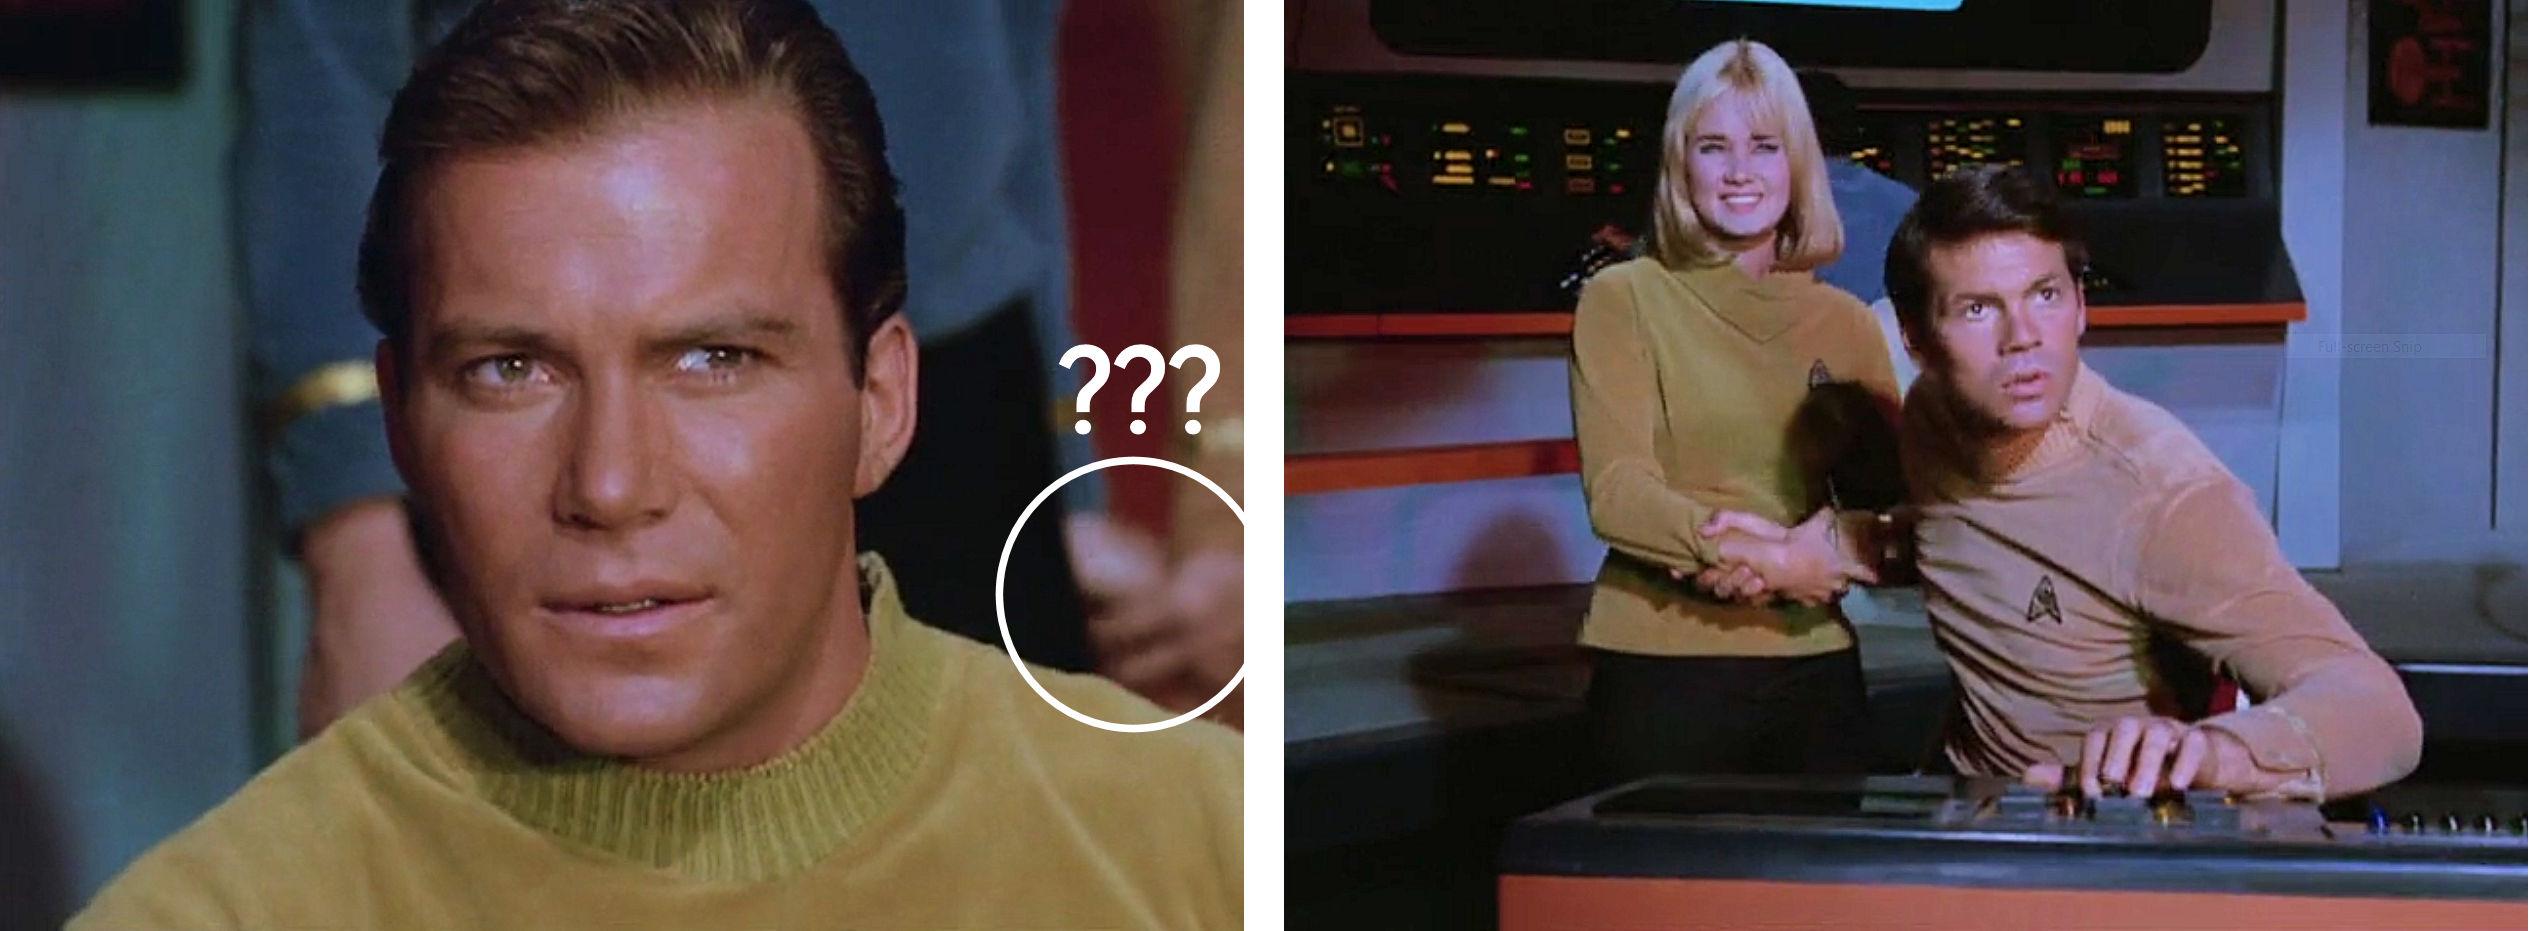 Screen shots of bridge from Star Trek episode